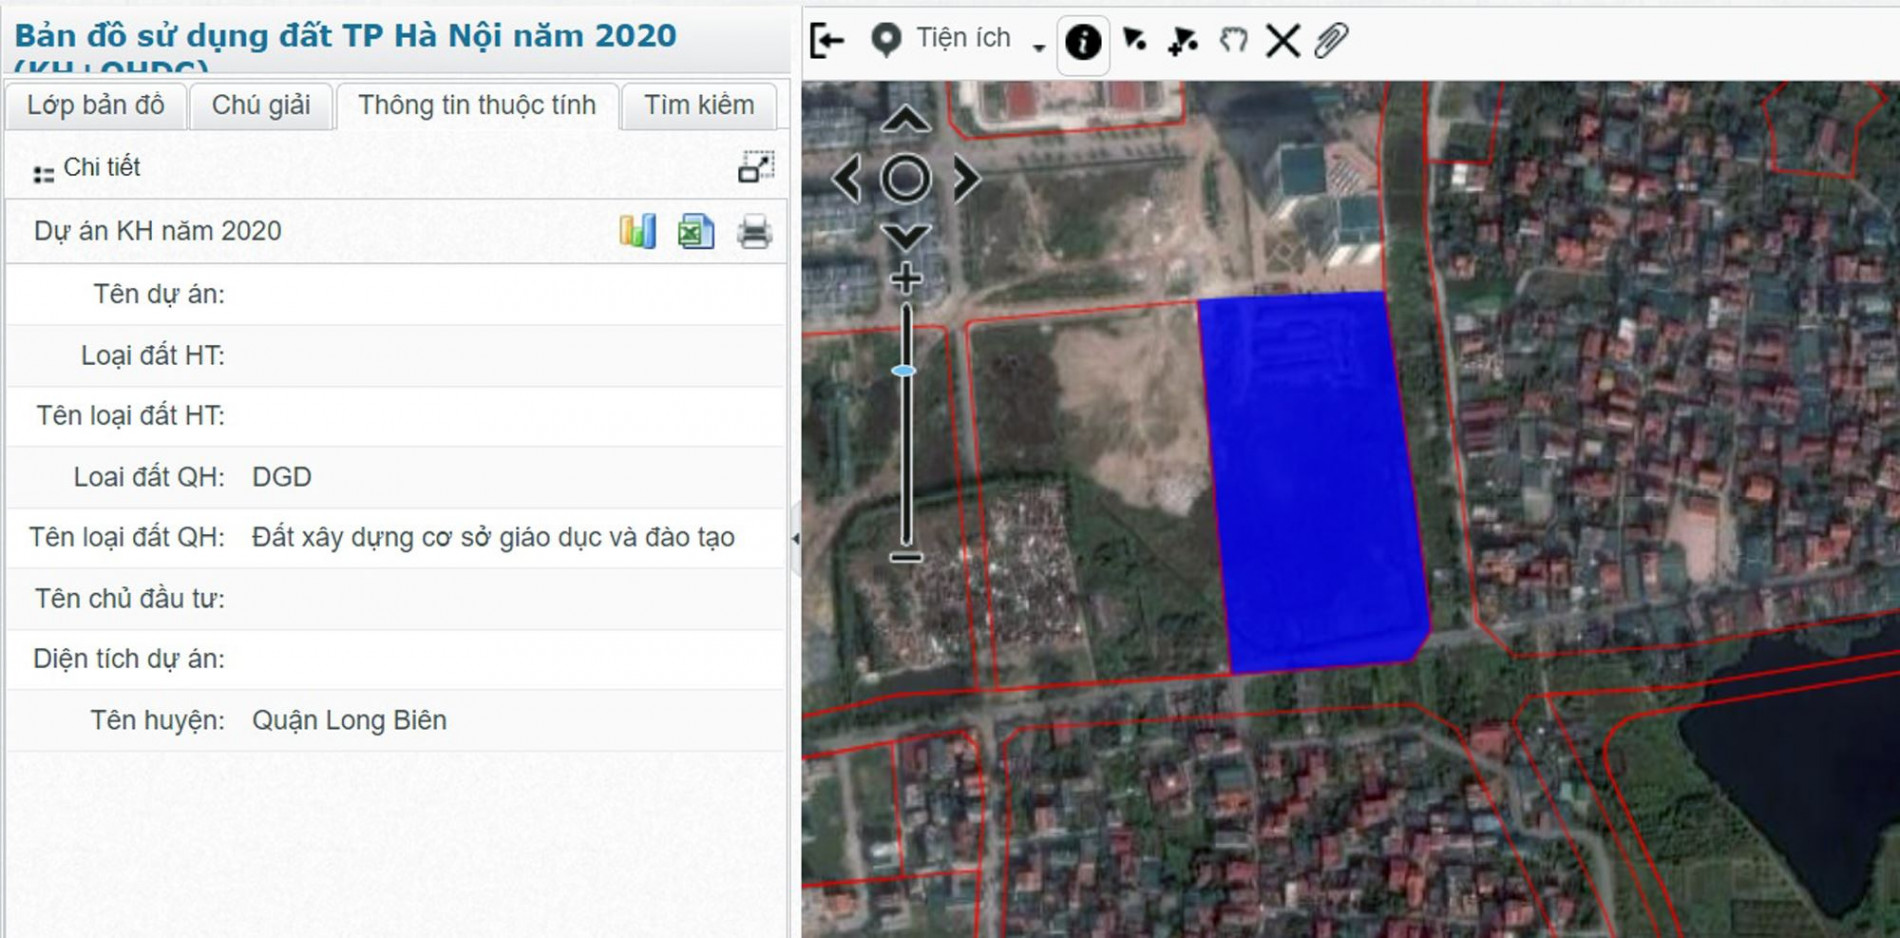 Những khu đất sắp thu hồi để xây trường học ở quận Long Biên, Hà Nội (phần 10)